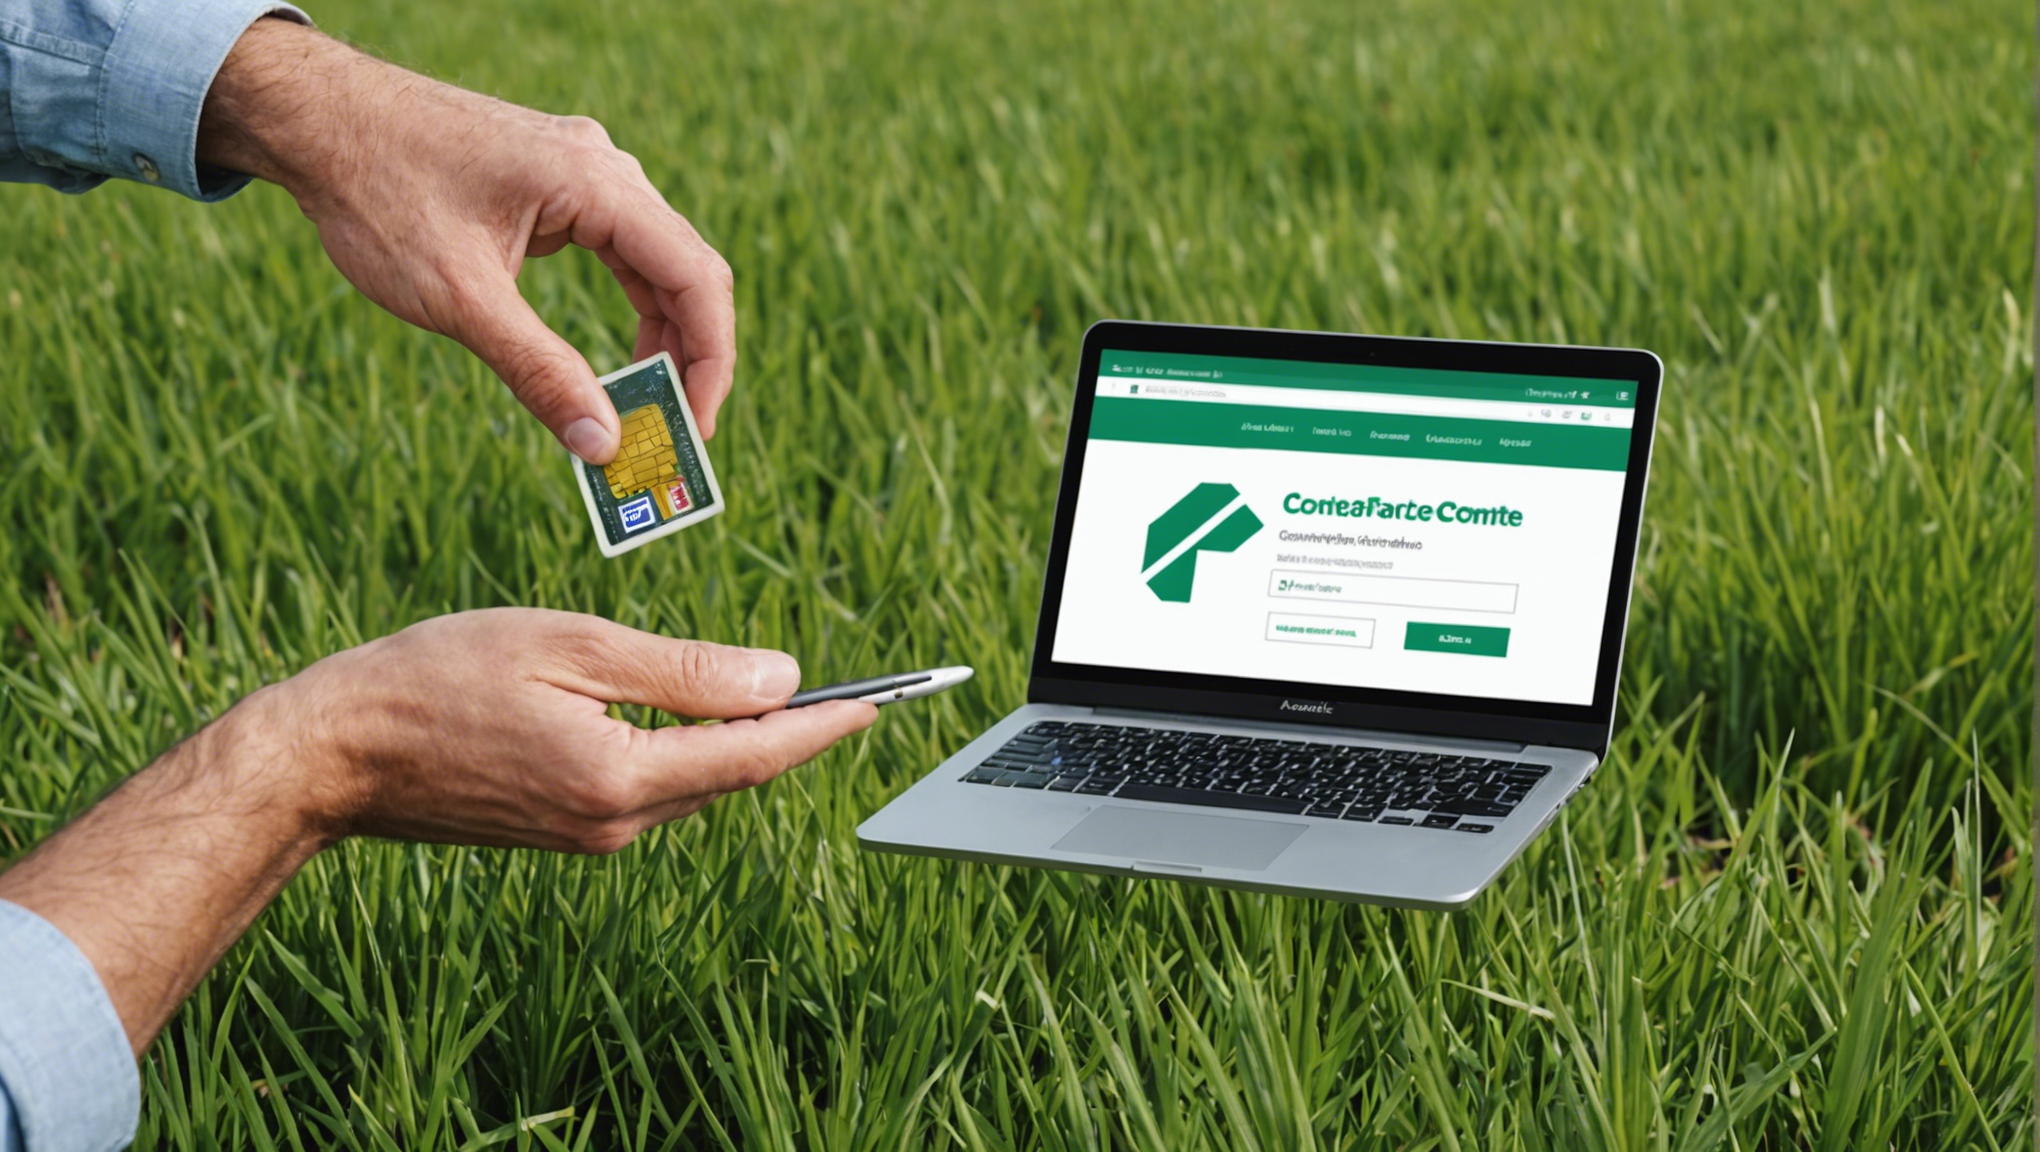 découvrez comment accéder facilement et en toute sécurité à votre compte en ligne au crédit agricole franche-comté grâce à notre guide pratique.